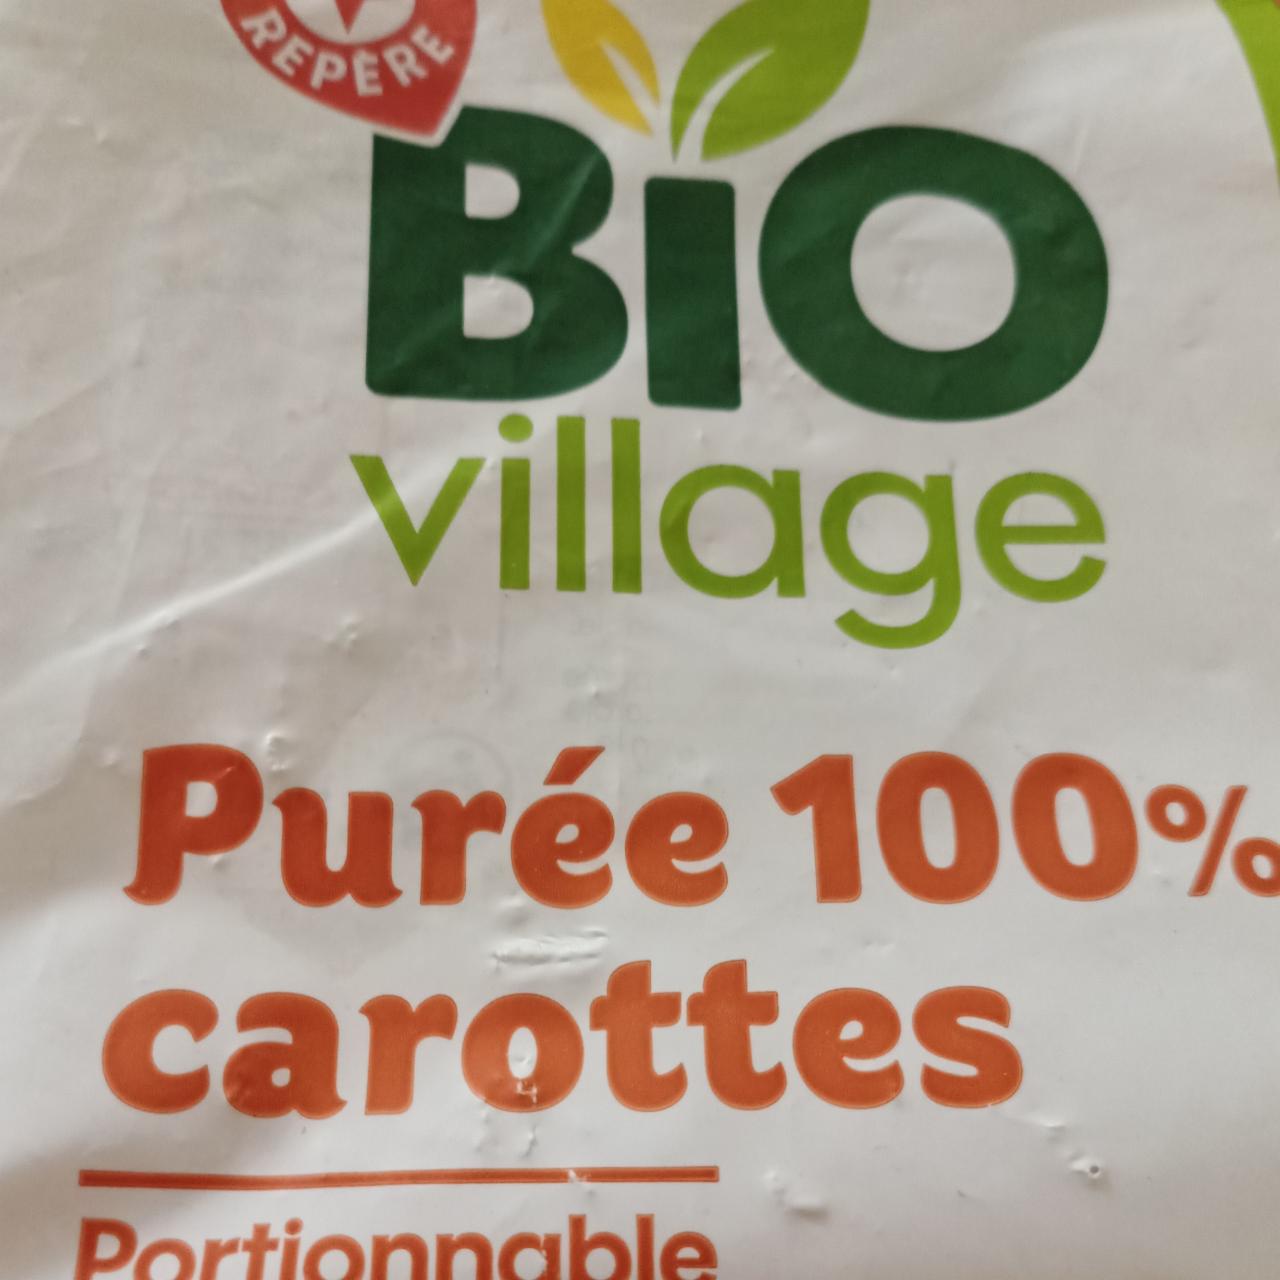 Fotografie - Purée 100% carottes Bio Village